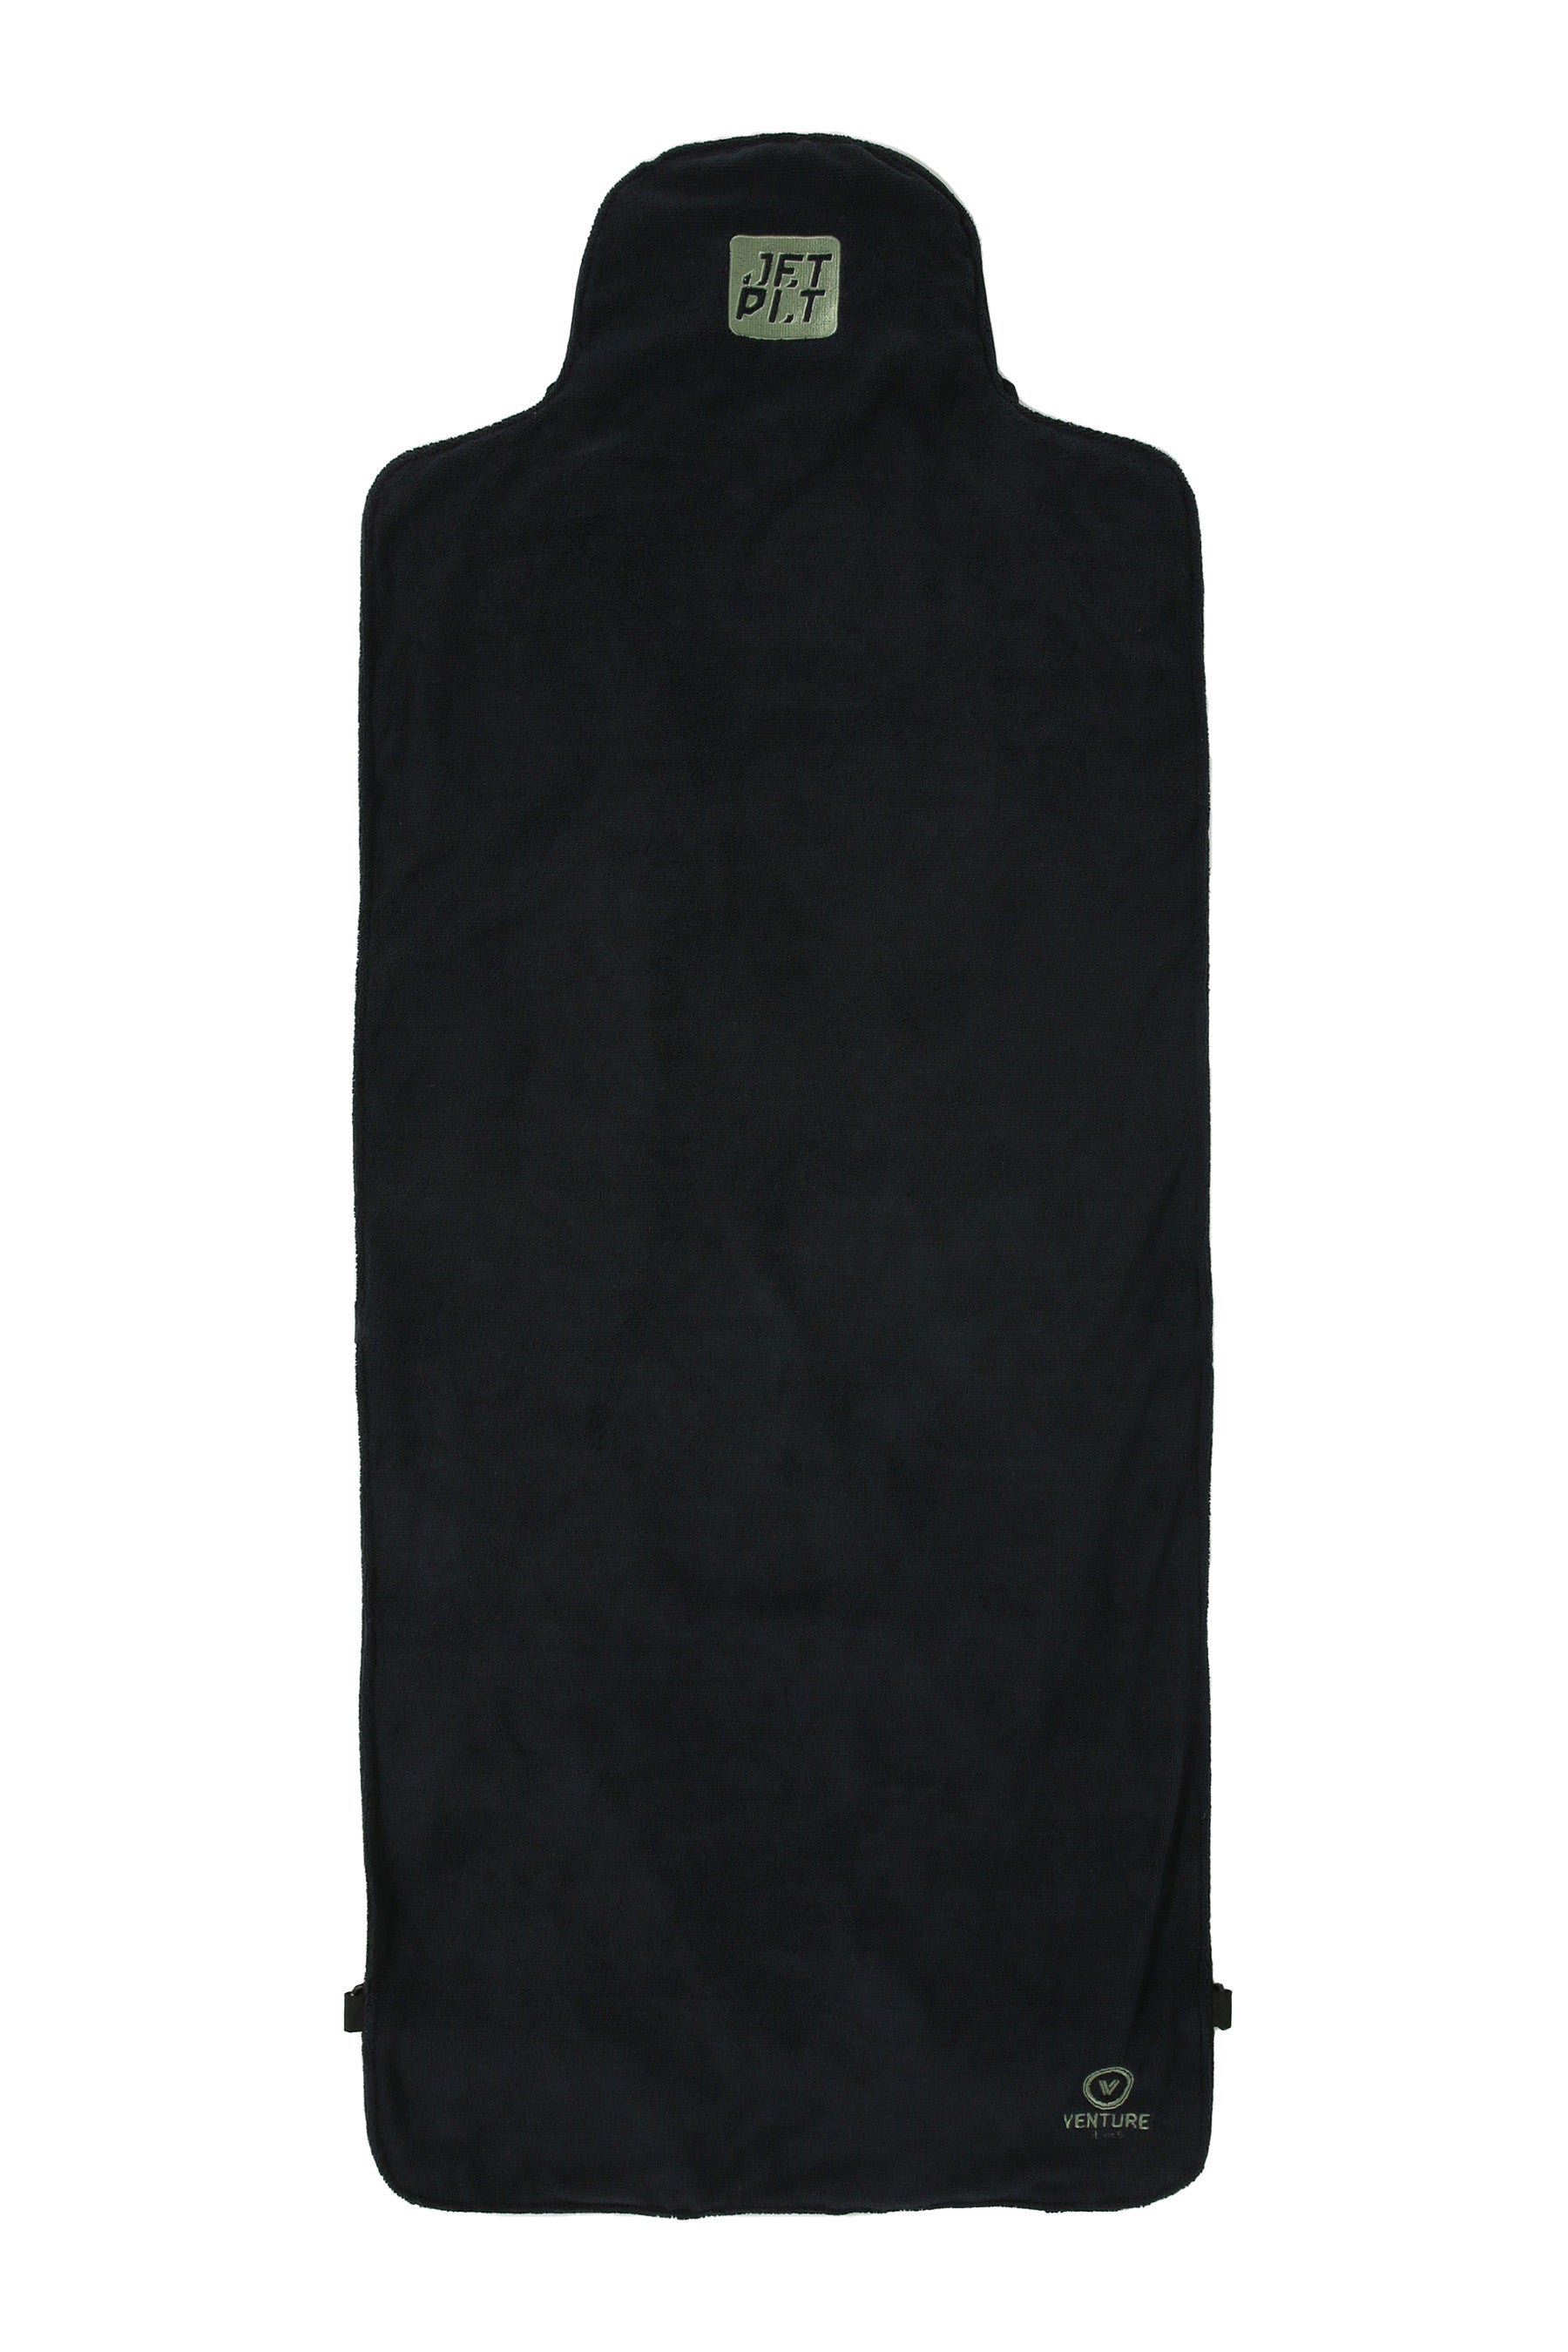 Jetpilot Seat Cover Towel - Black